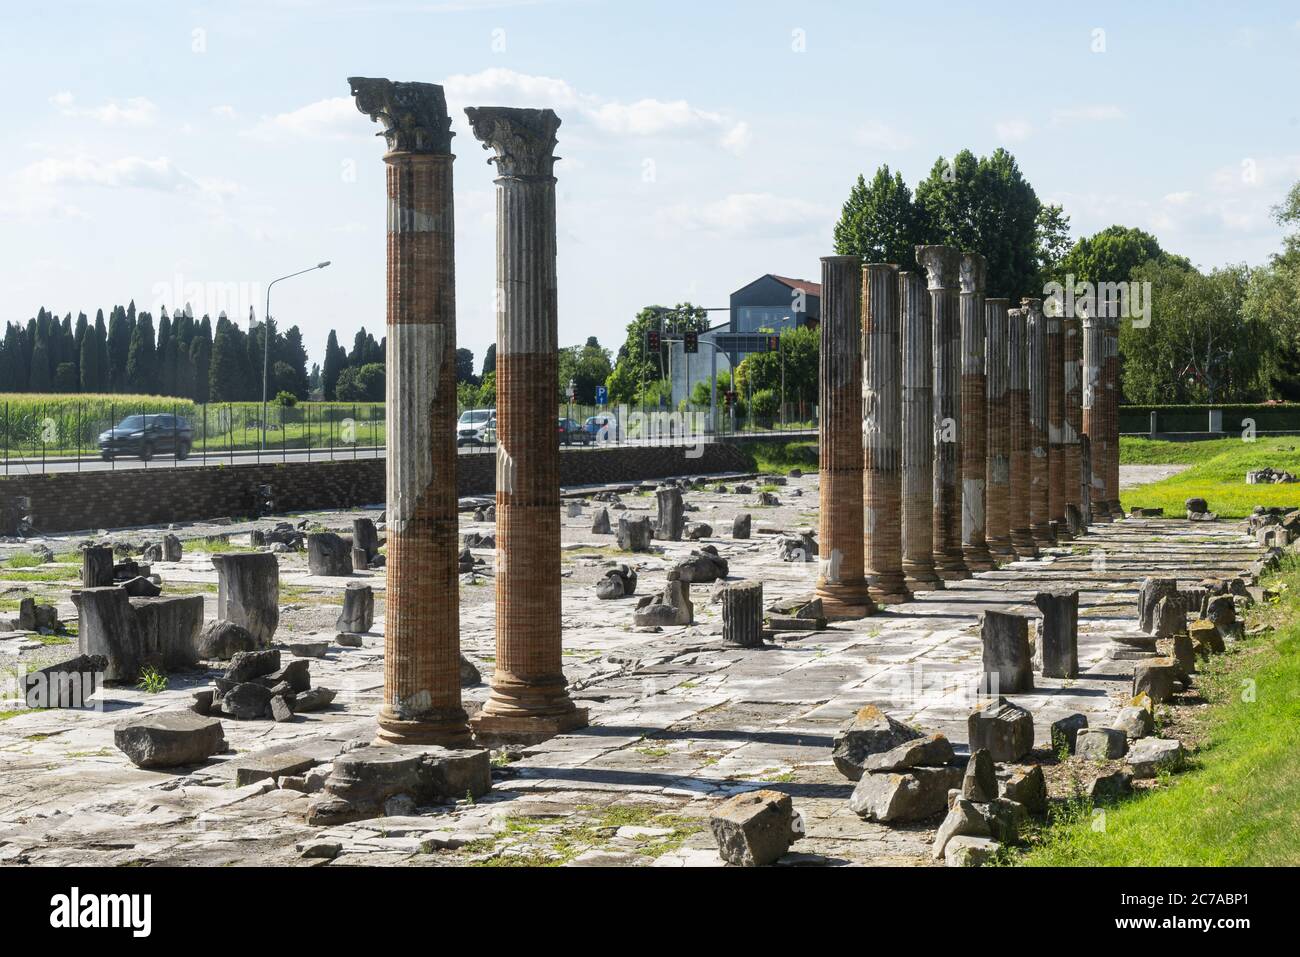 La vue panoramique du forum romain d'Aquileia, l'ancienne place principale du centre-ville de Roman Aquileia du 1er siècle avant J.-C. (le pavé Banque D'Images